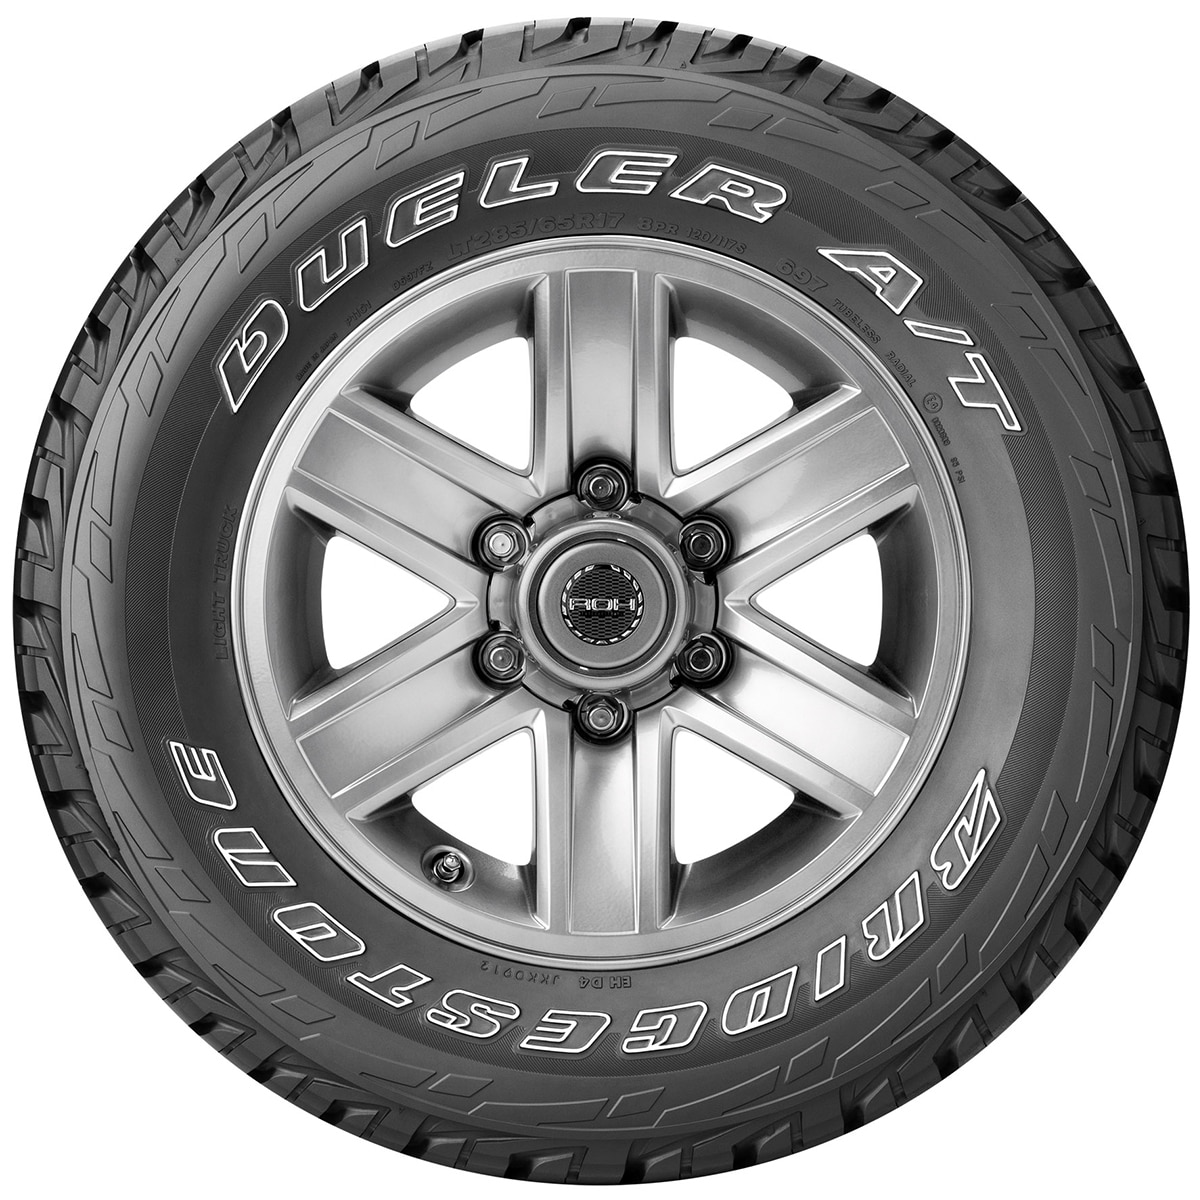 265/70R16 117S RBT D697 - Tyre